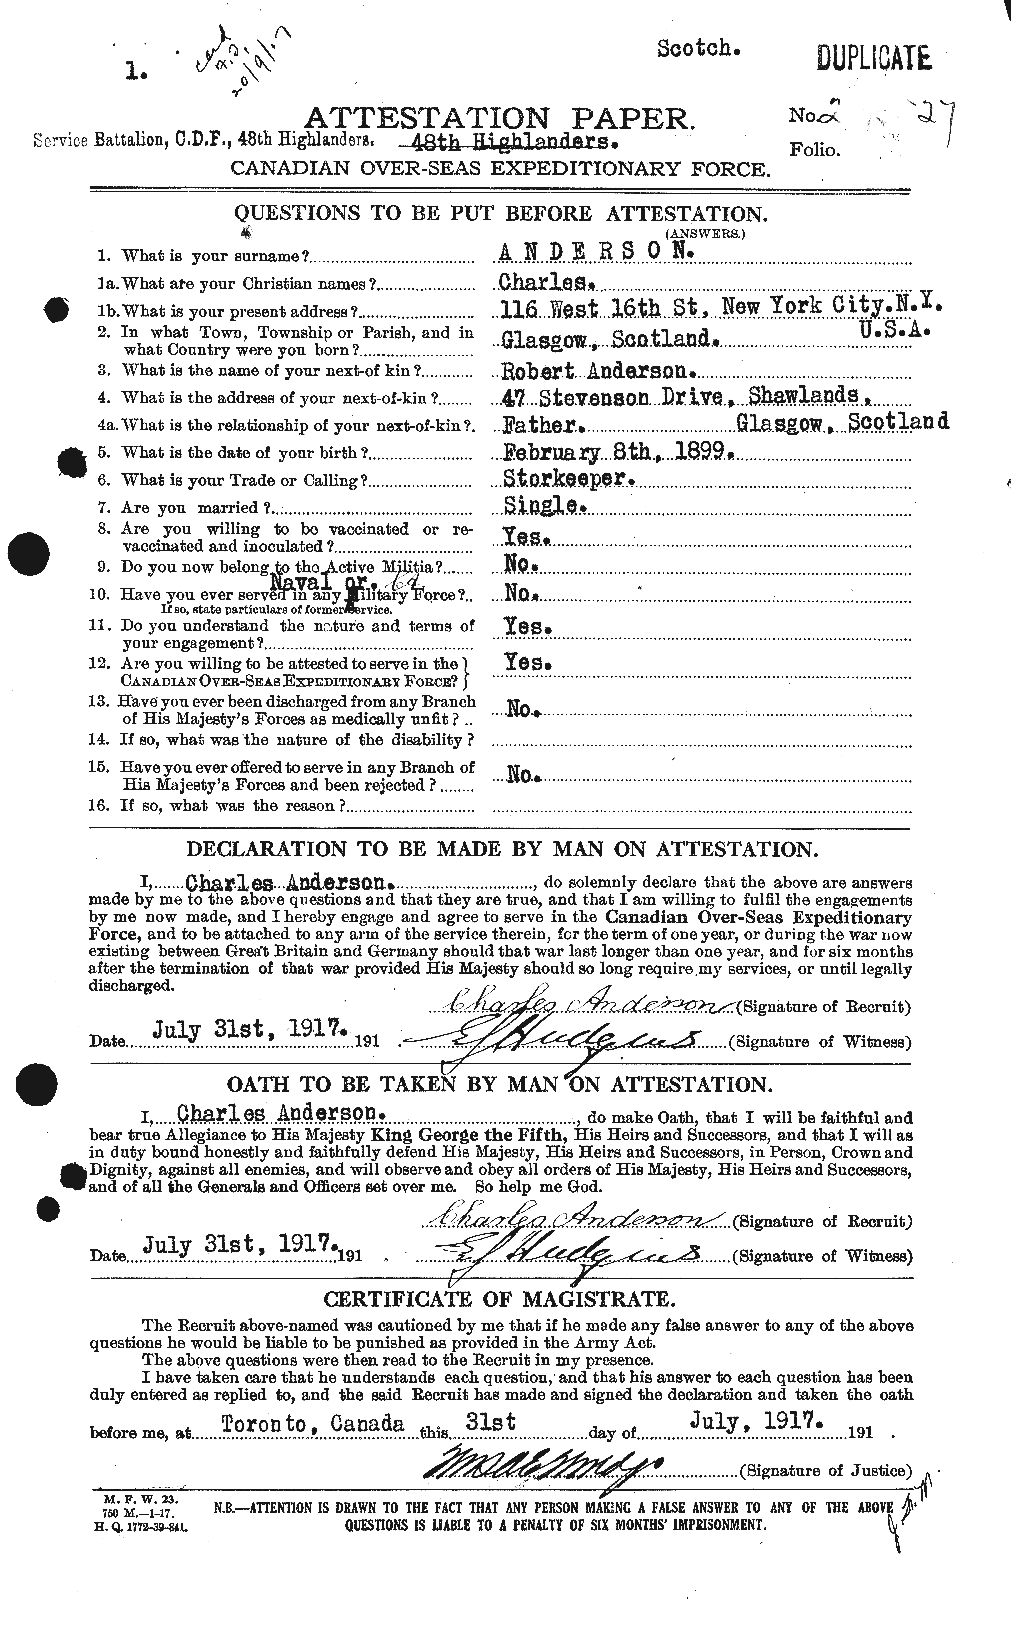 Dossiers du Personnel de la Première Guerre mondiale - CEC 209264a